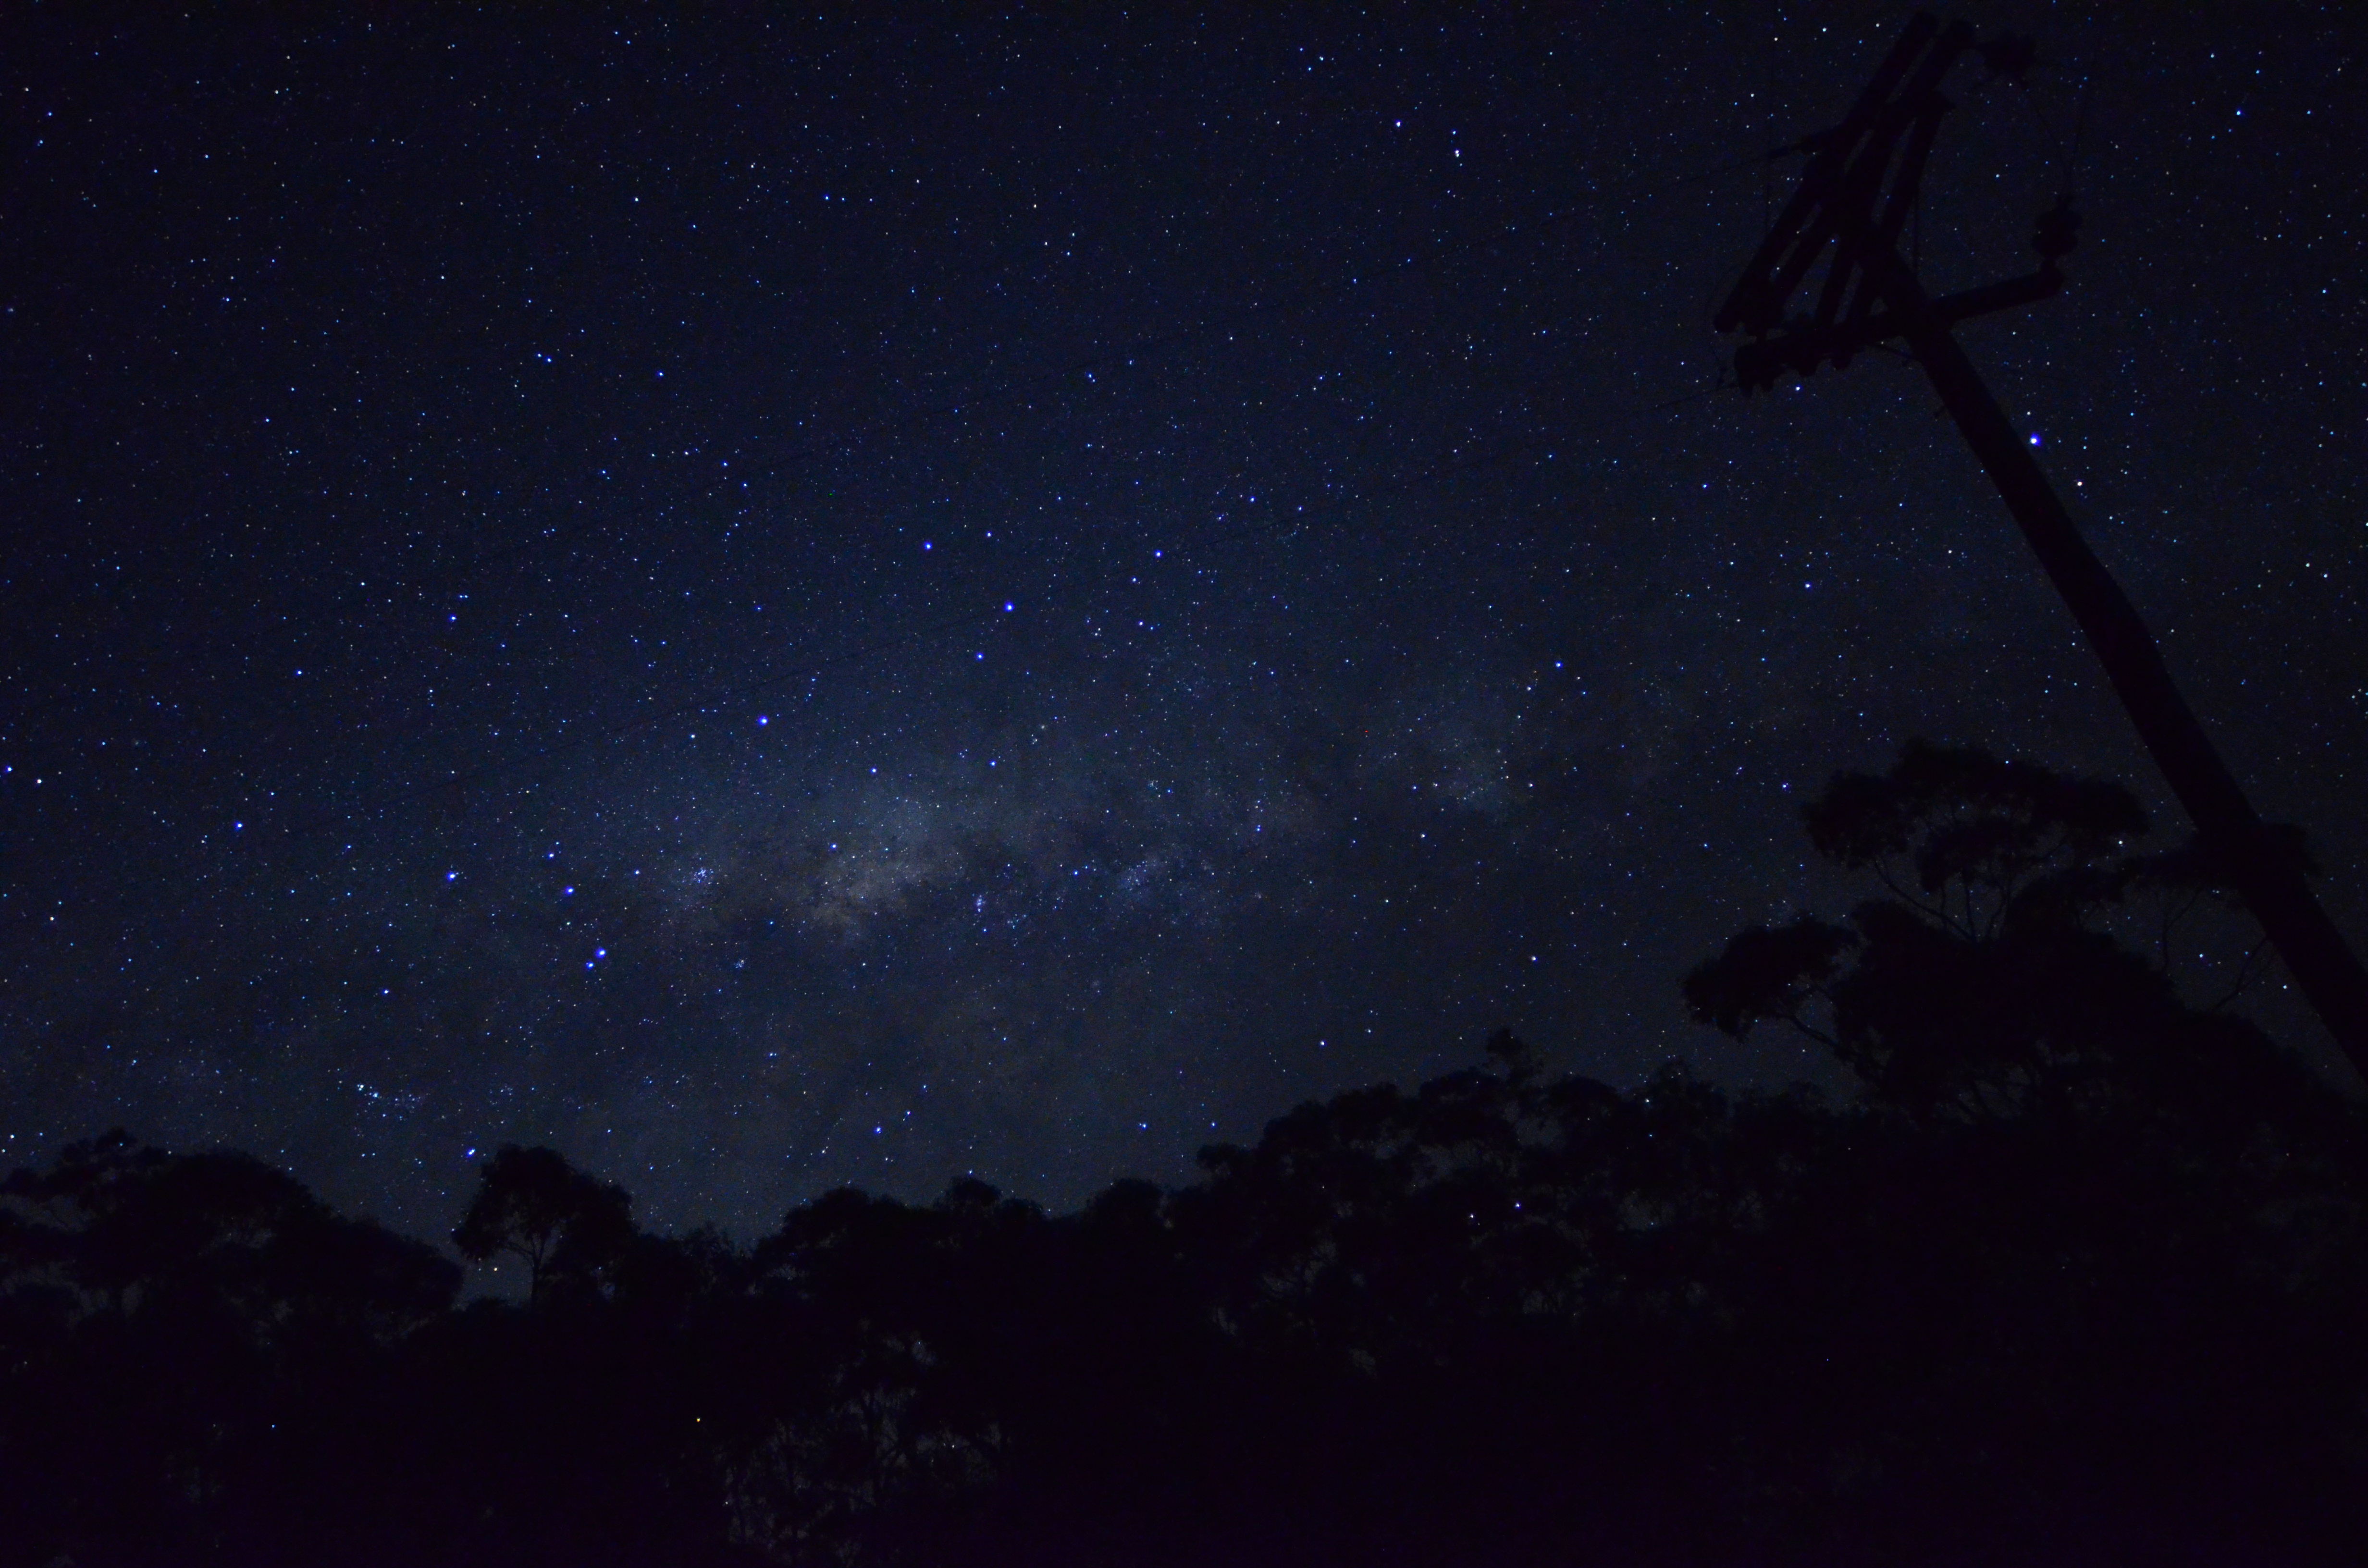 night, stars, skyscapes - desktop wallpaper